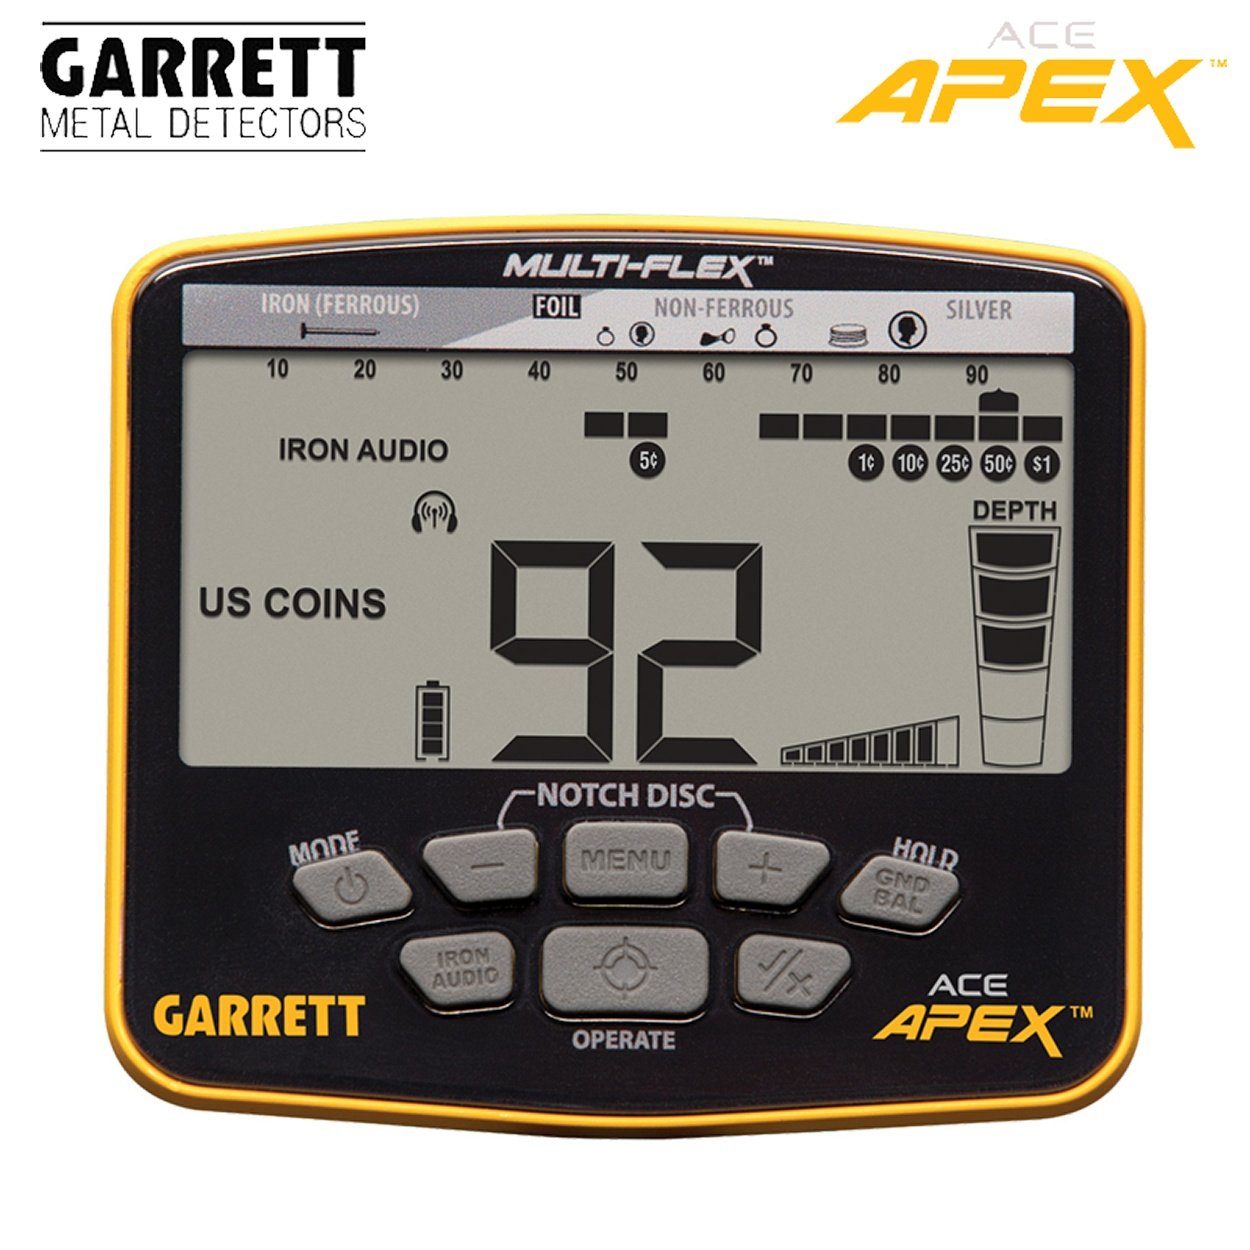 Pack) Garrett Ace Raider APEX Metalldetektor Metalldetektor (Wireless Garrett